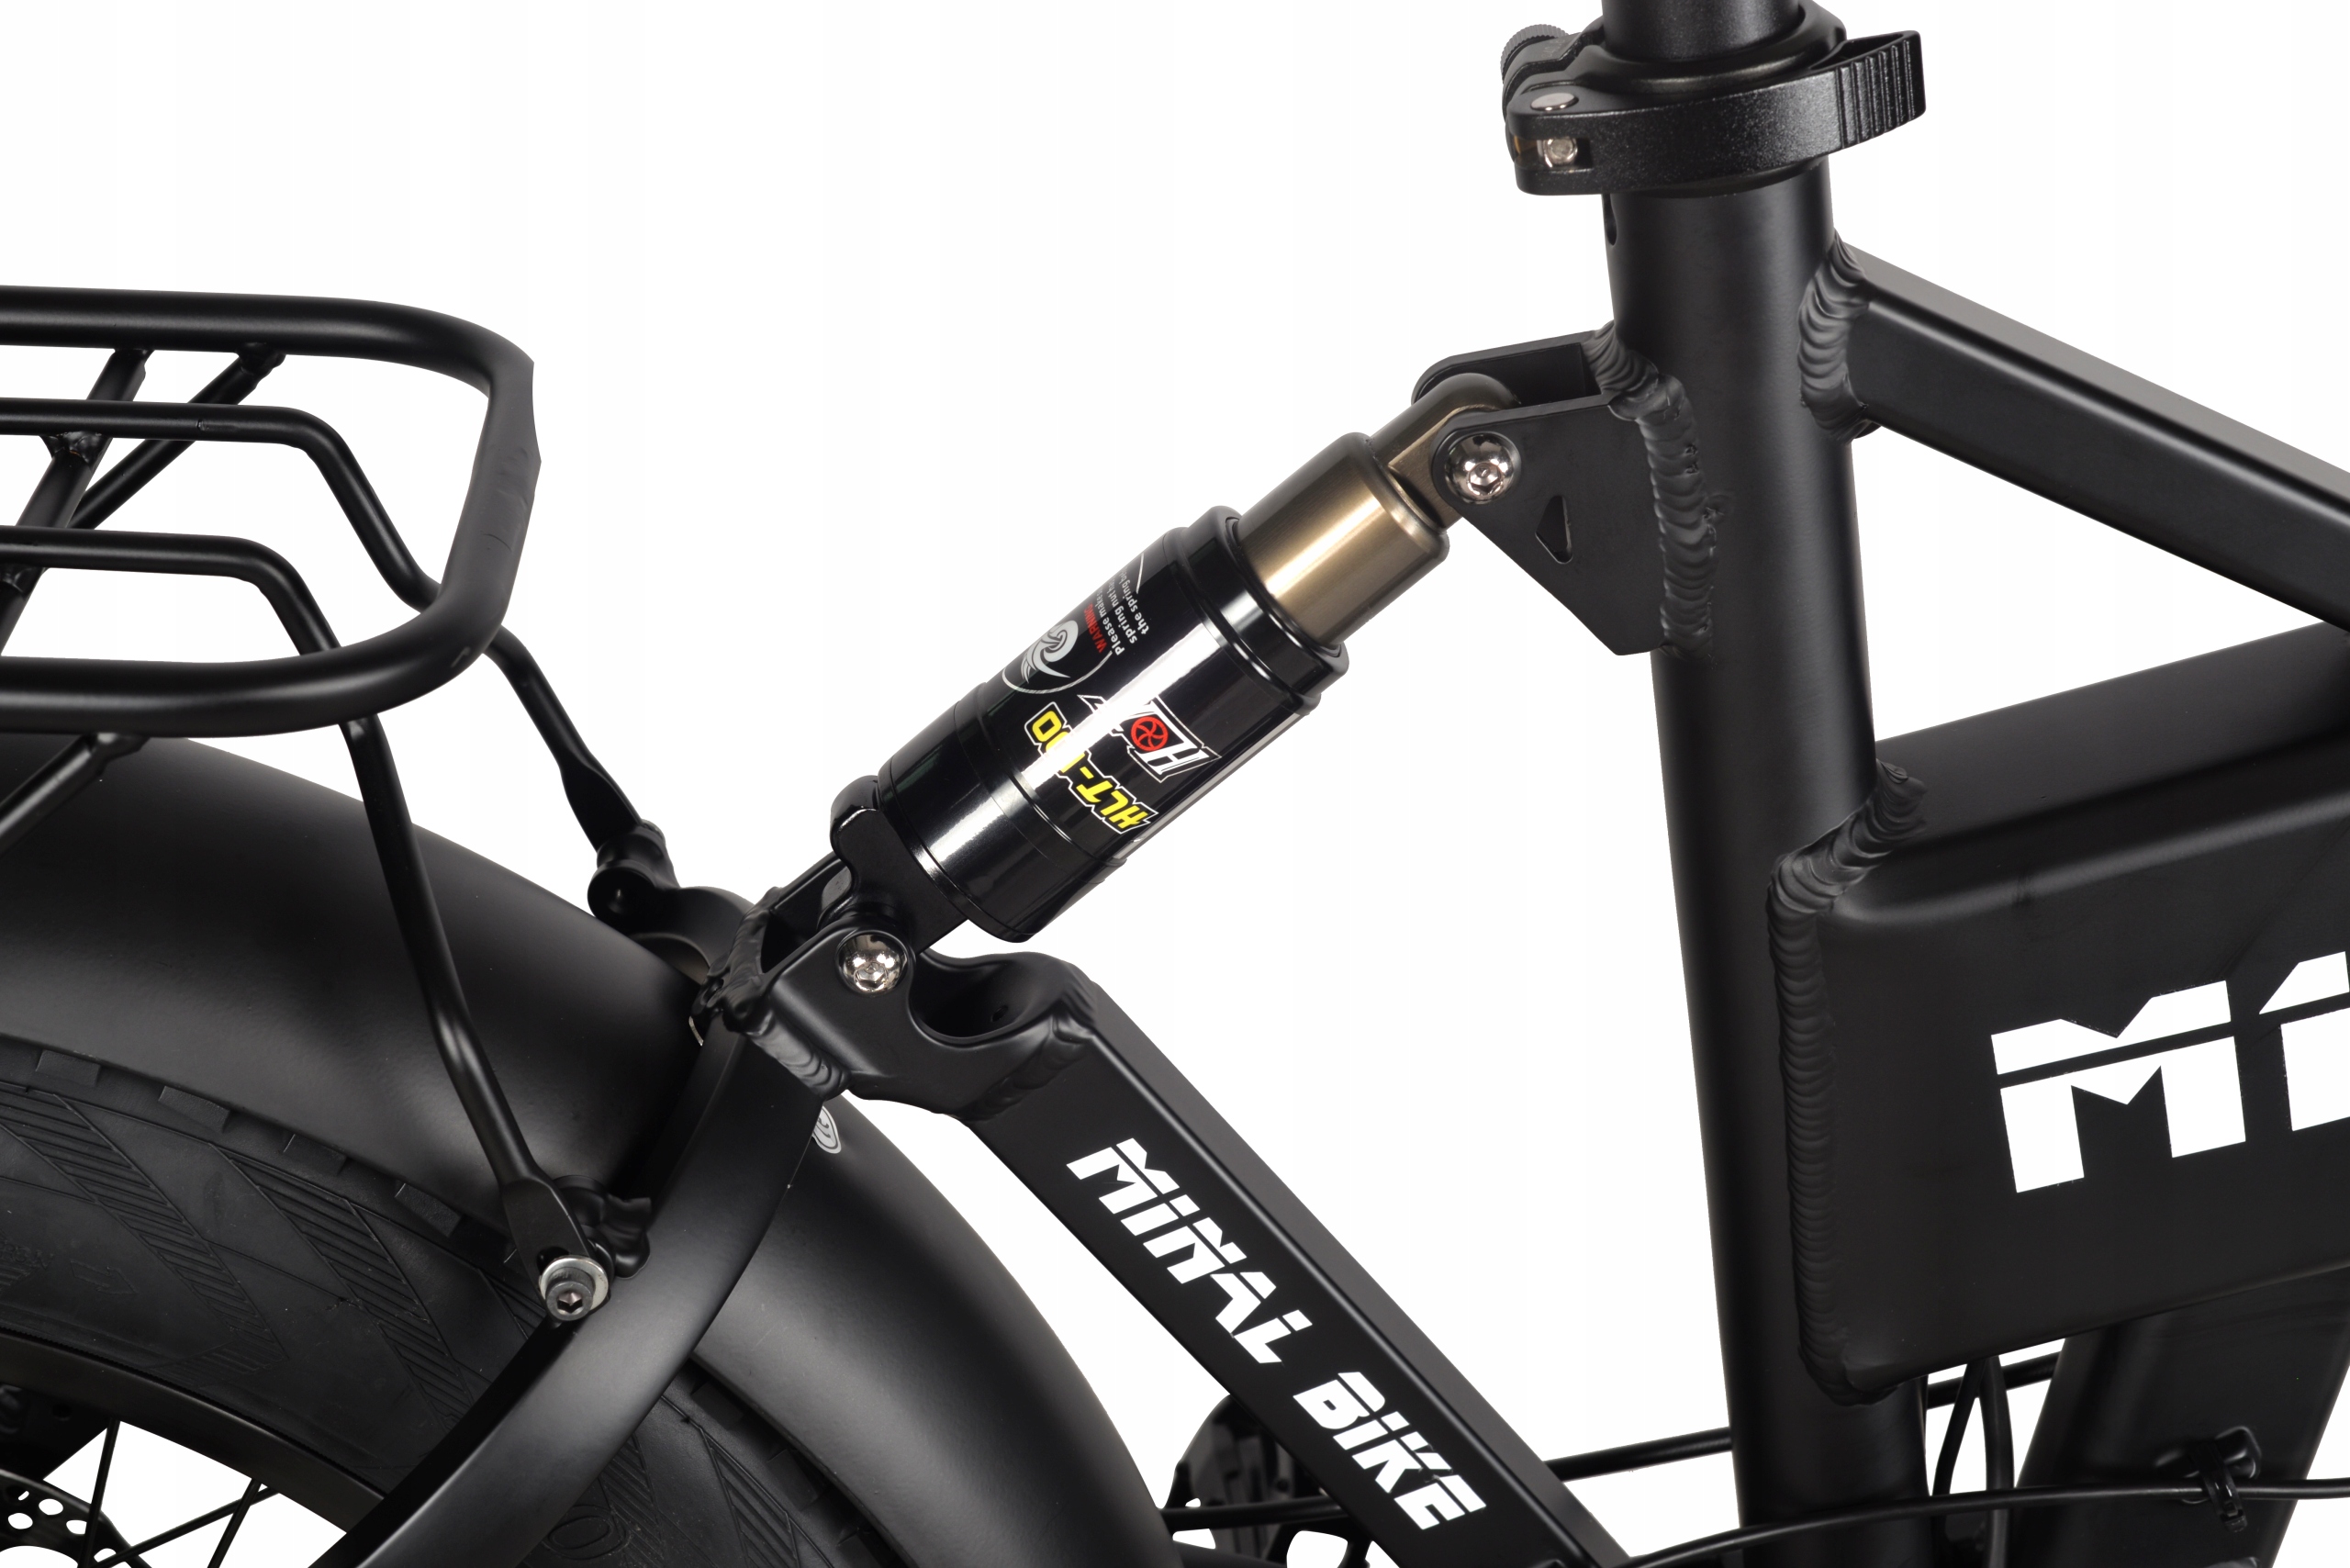 Складной велосипед NINAL 750W 48V 10.5AH черный электрический велосипед Kod producenta